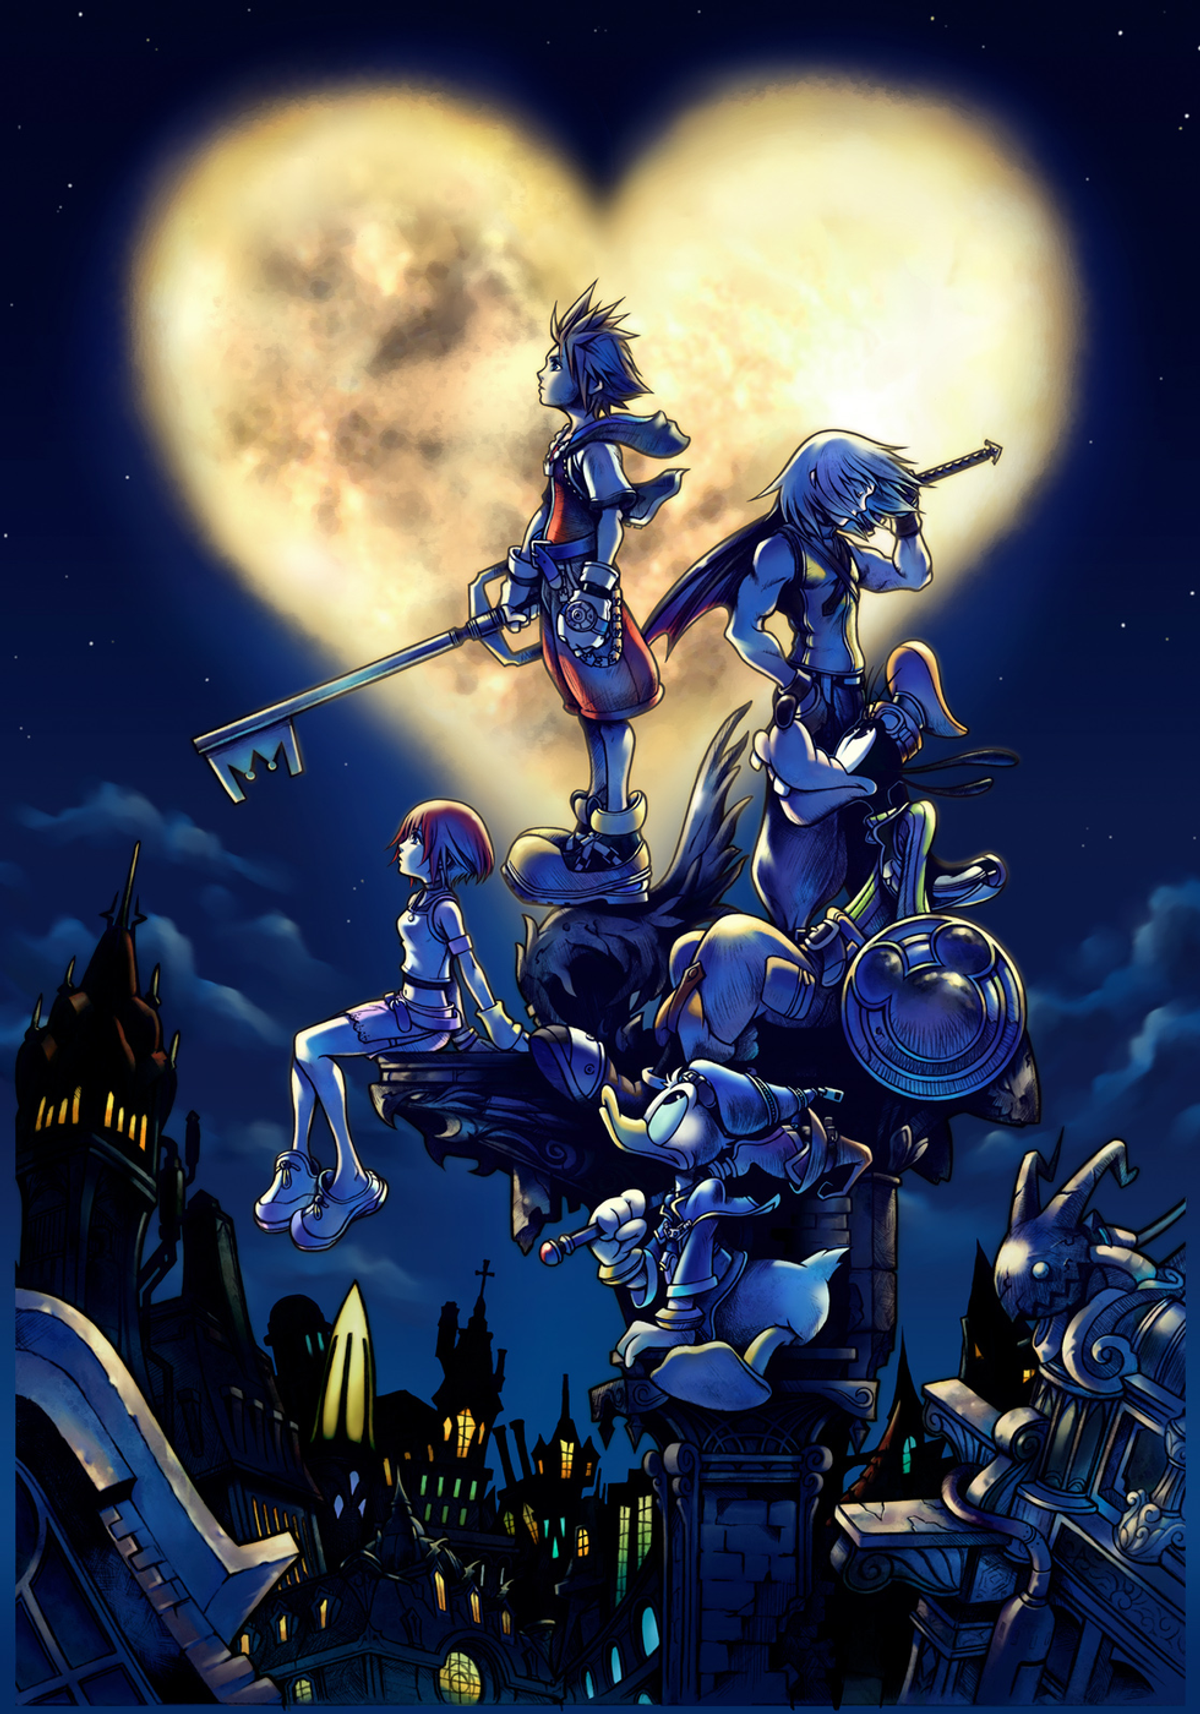 5 Reasons Why I Will Always Love Kingdom Hearts